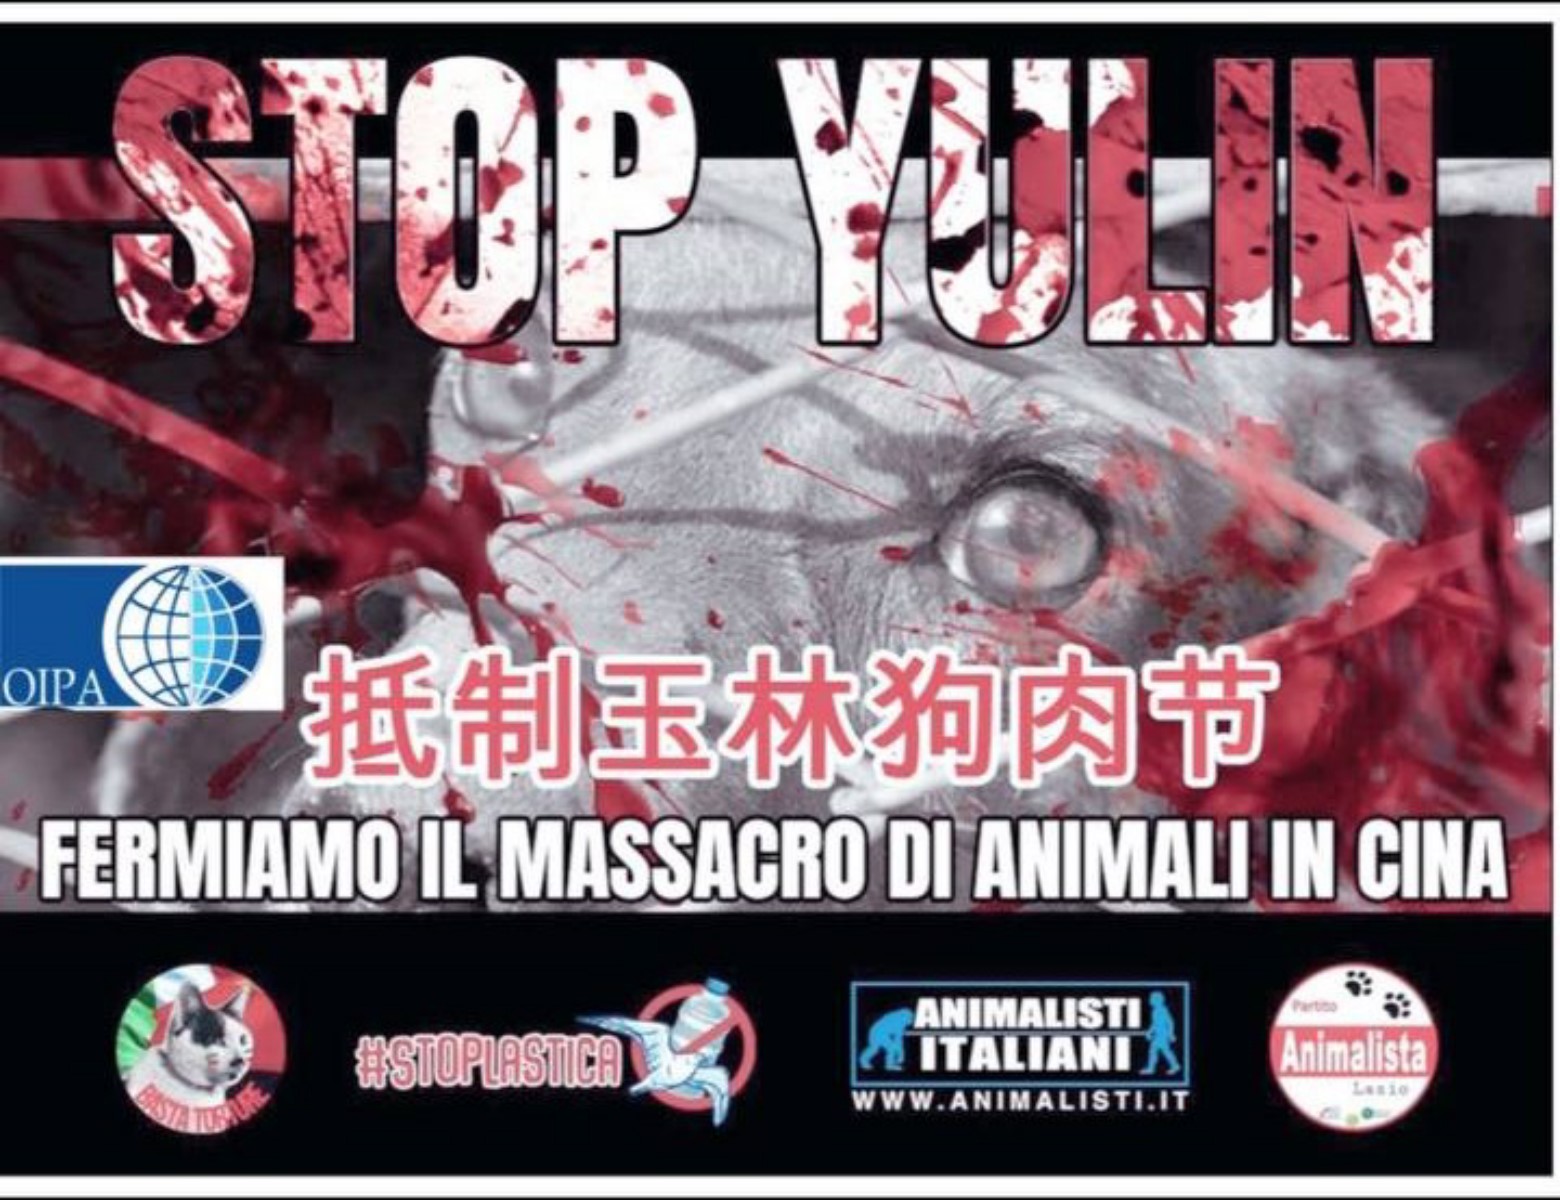 ROMA – STOP YULIN: FERMIAMO IL MASSACRO DI ANIMALI IN CINA